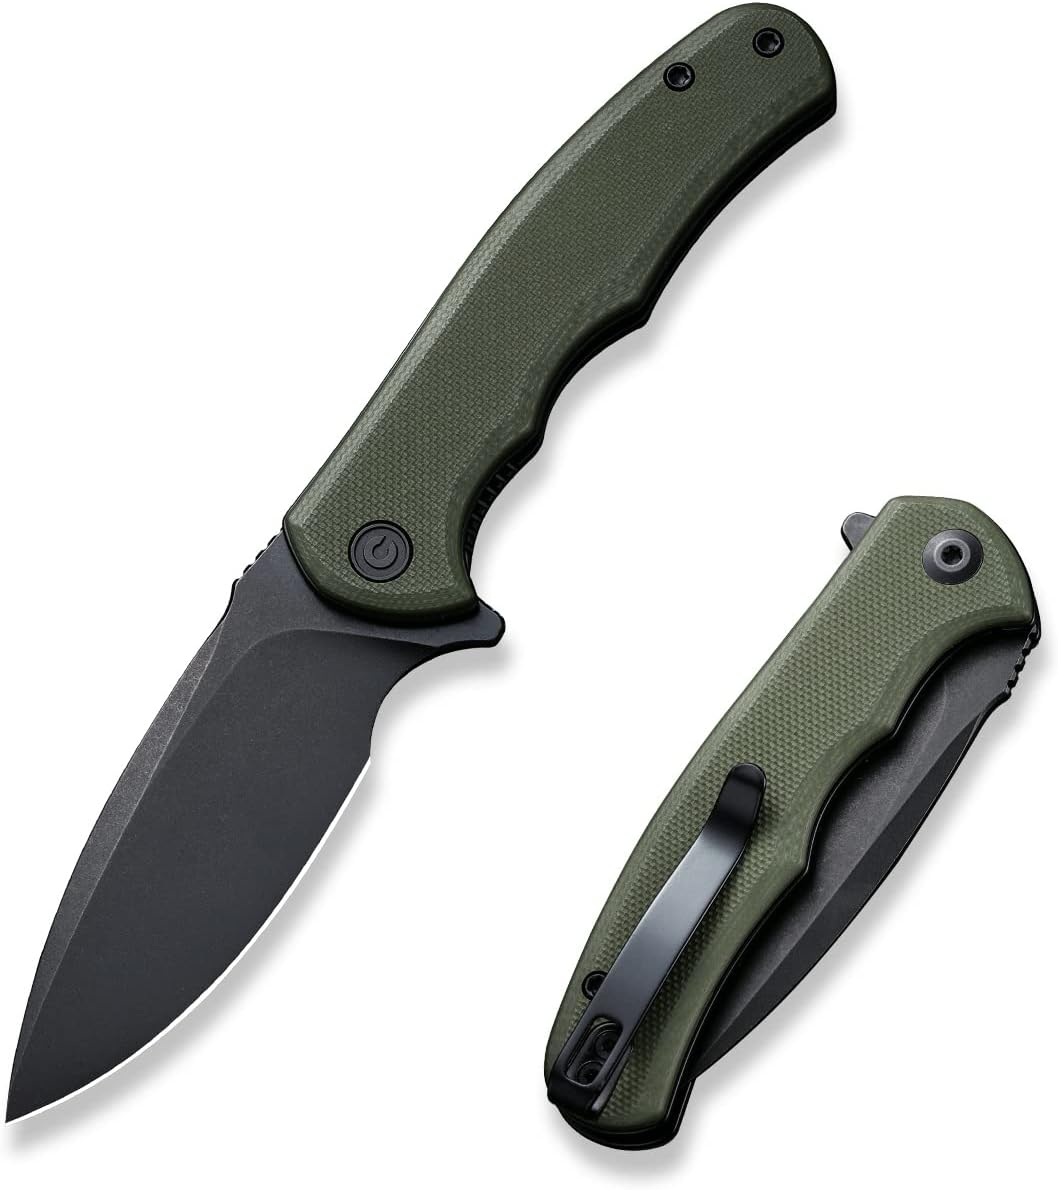 CIVIVI Mini Praxis Folding Pocket Knife, 2.98" D2 